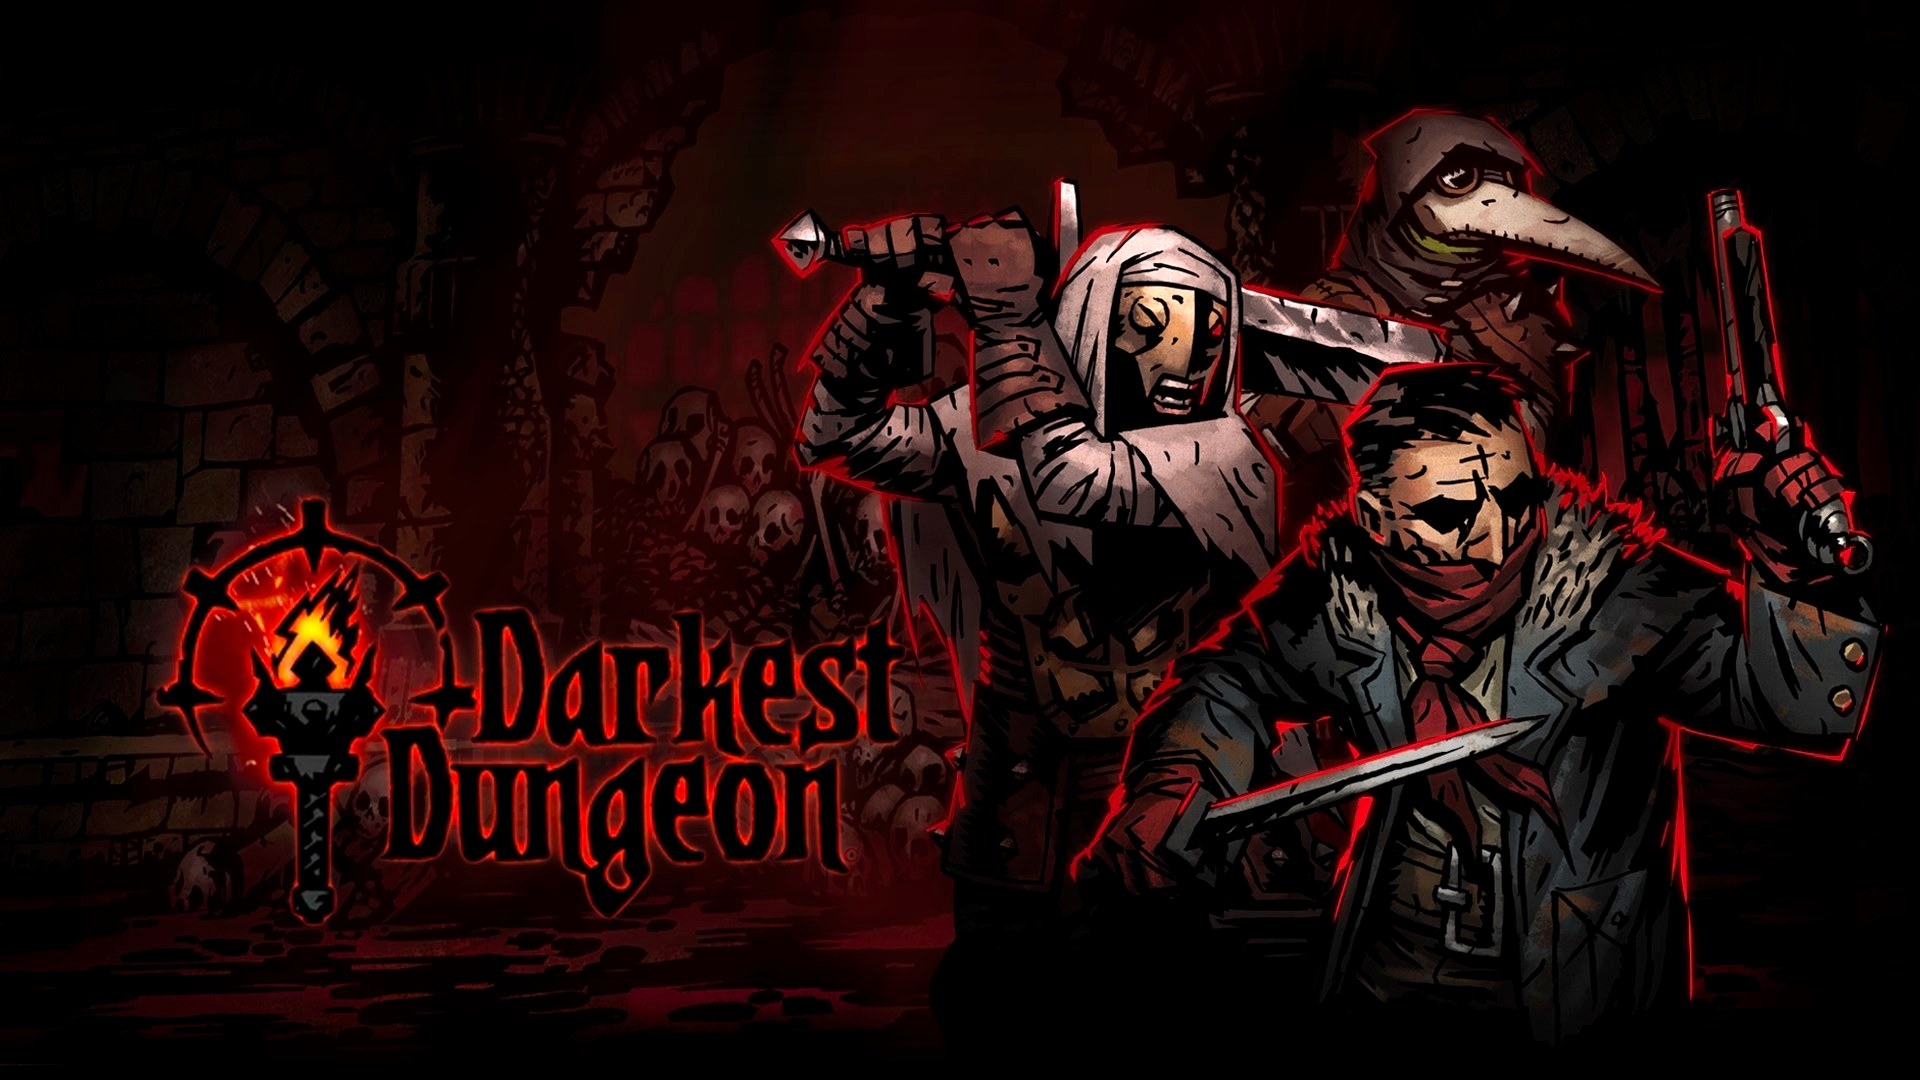 [JEU] QUESTION POUR UN GAMOPAT - Page 4 Darkest-dungeon-cover